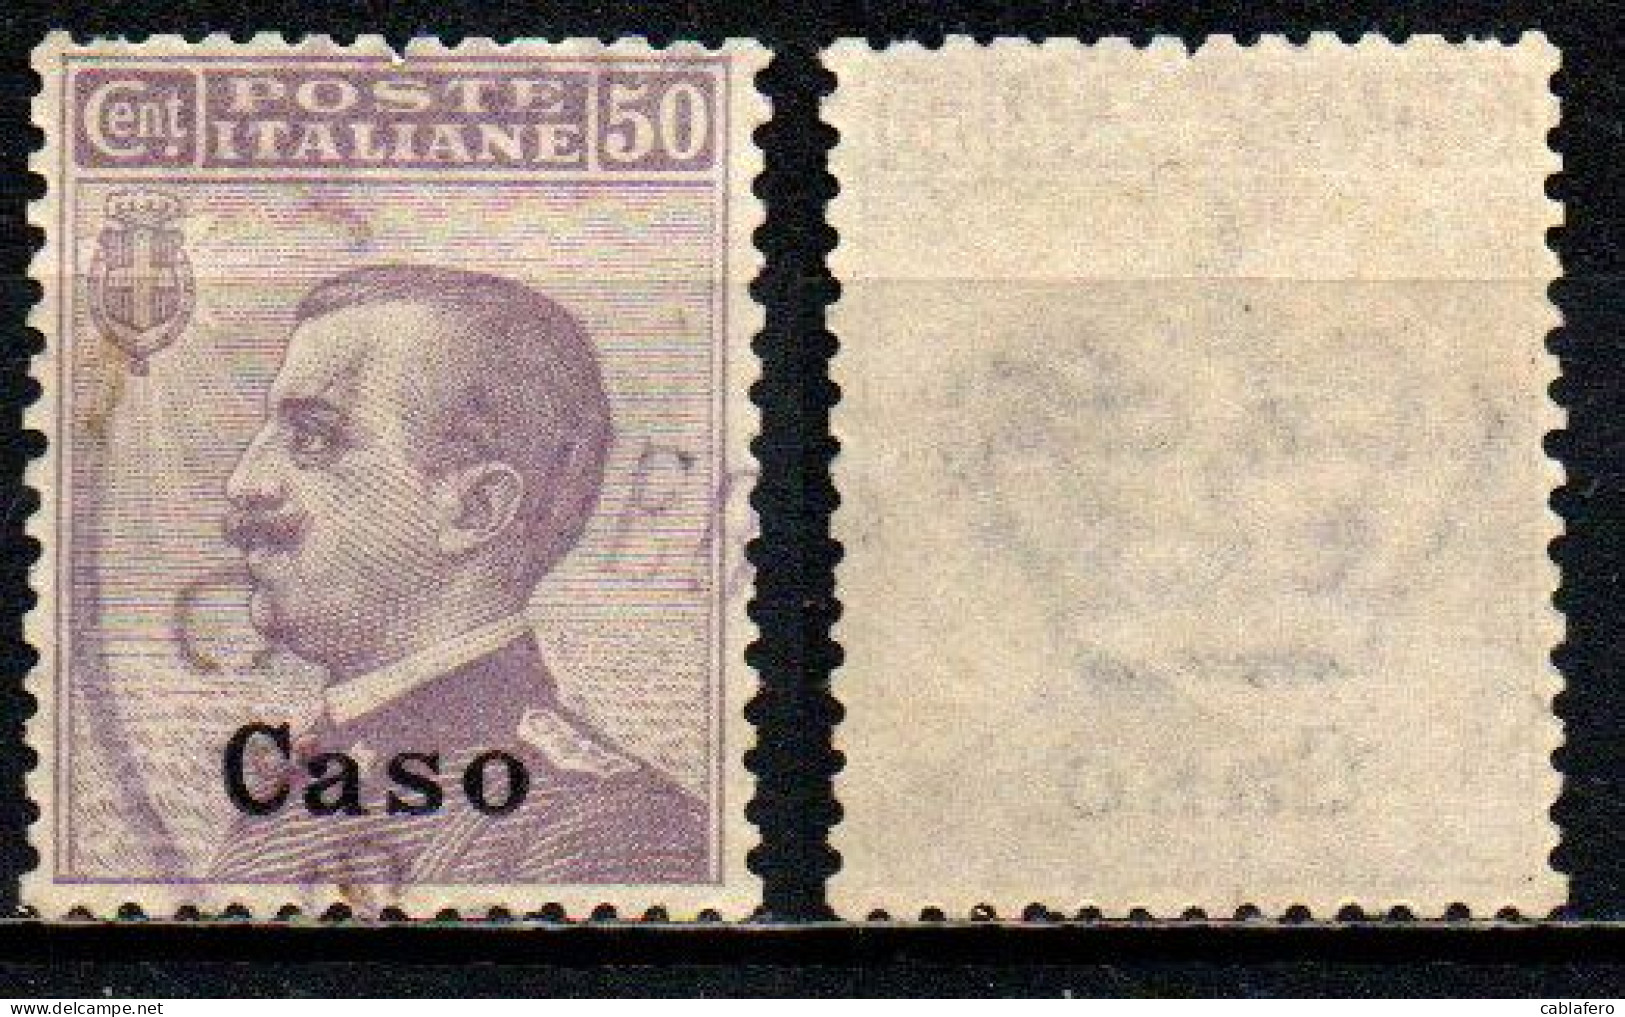 COLONIE ITALIANE - CASO - 1912 - VITTORIO EMANUELE III - 50 C. - MICHETTI - USATO - Egée (Caso)